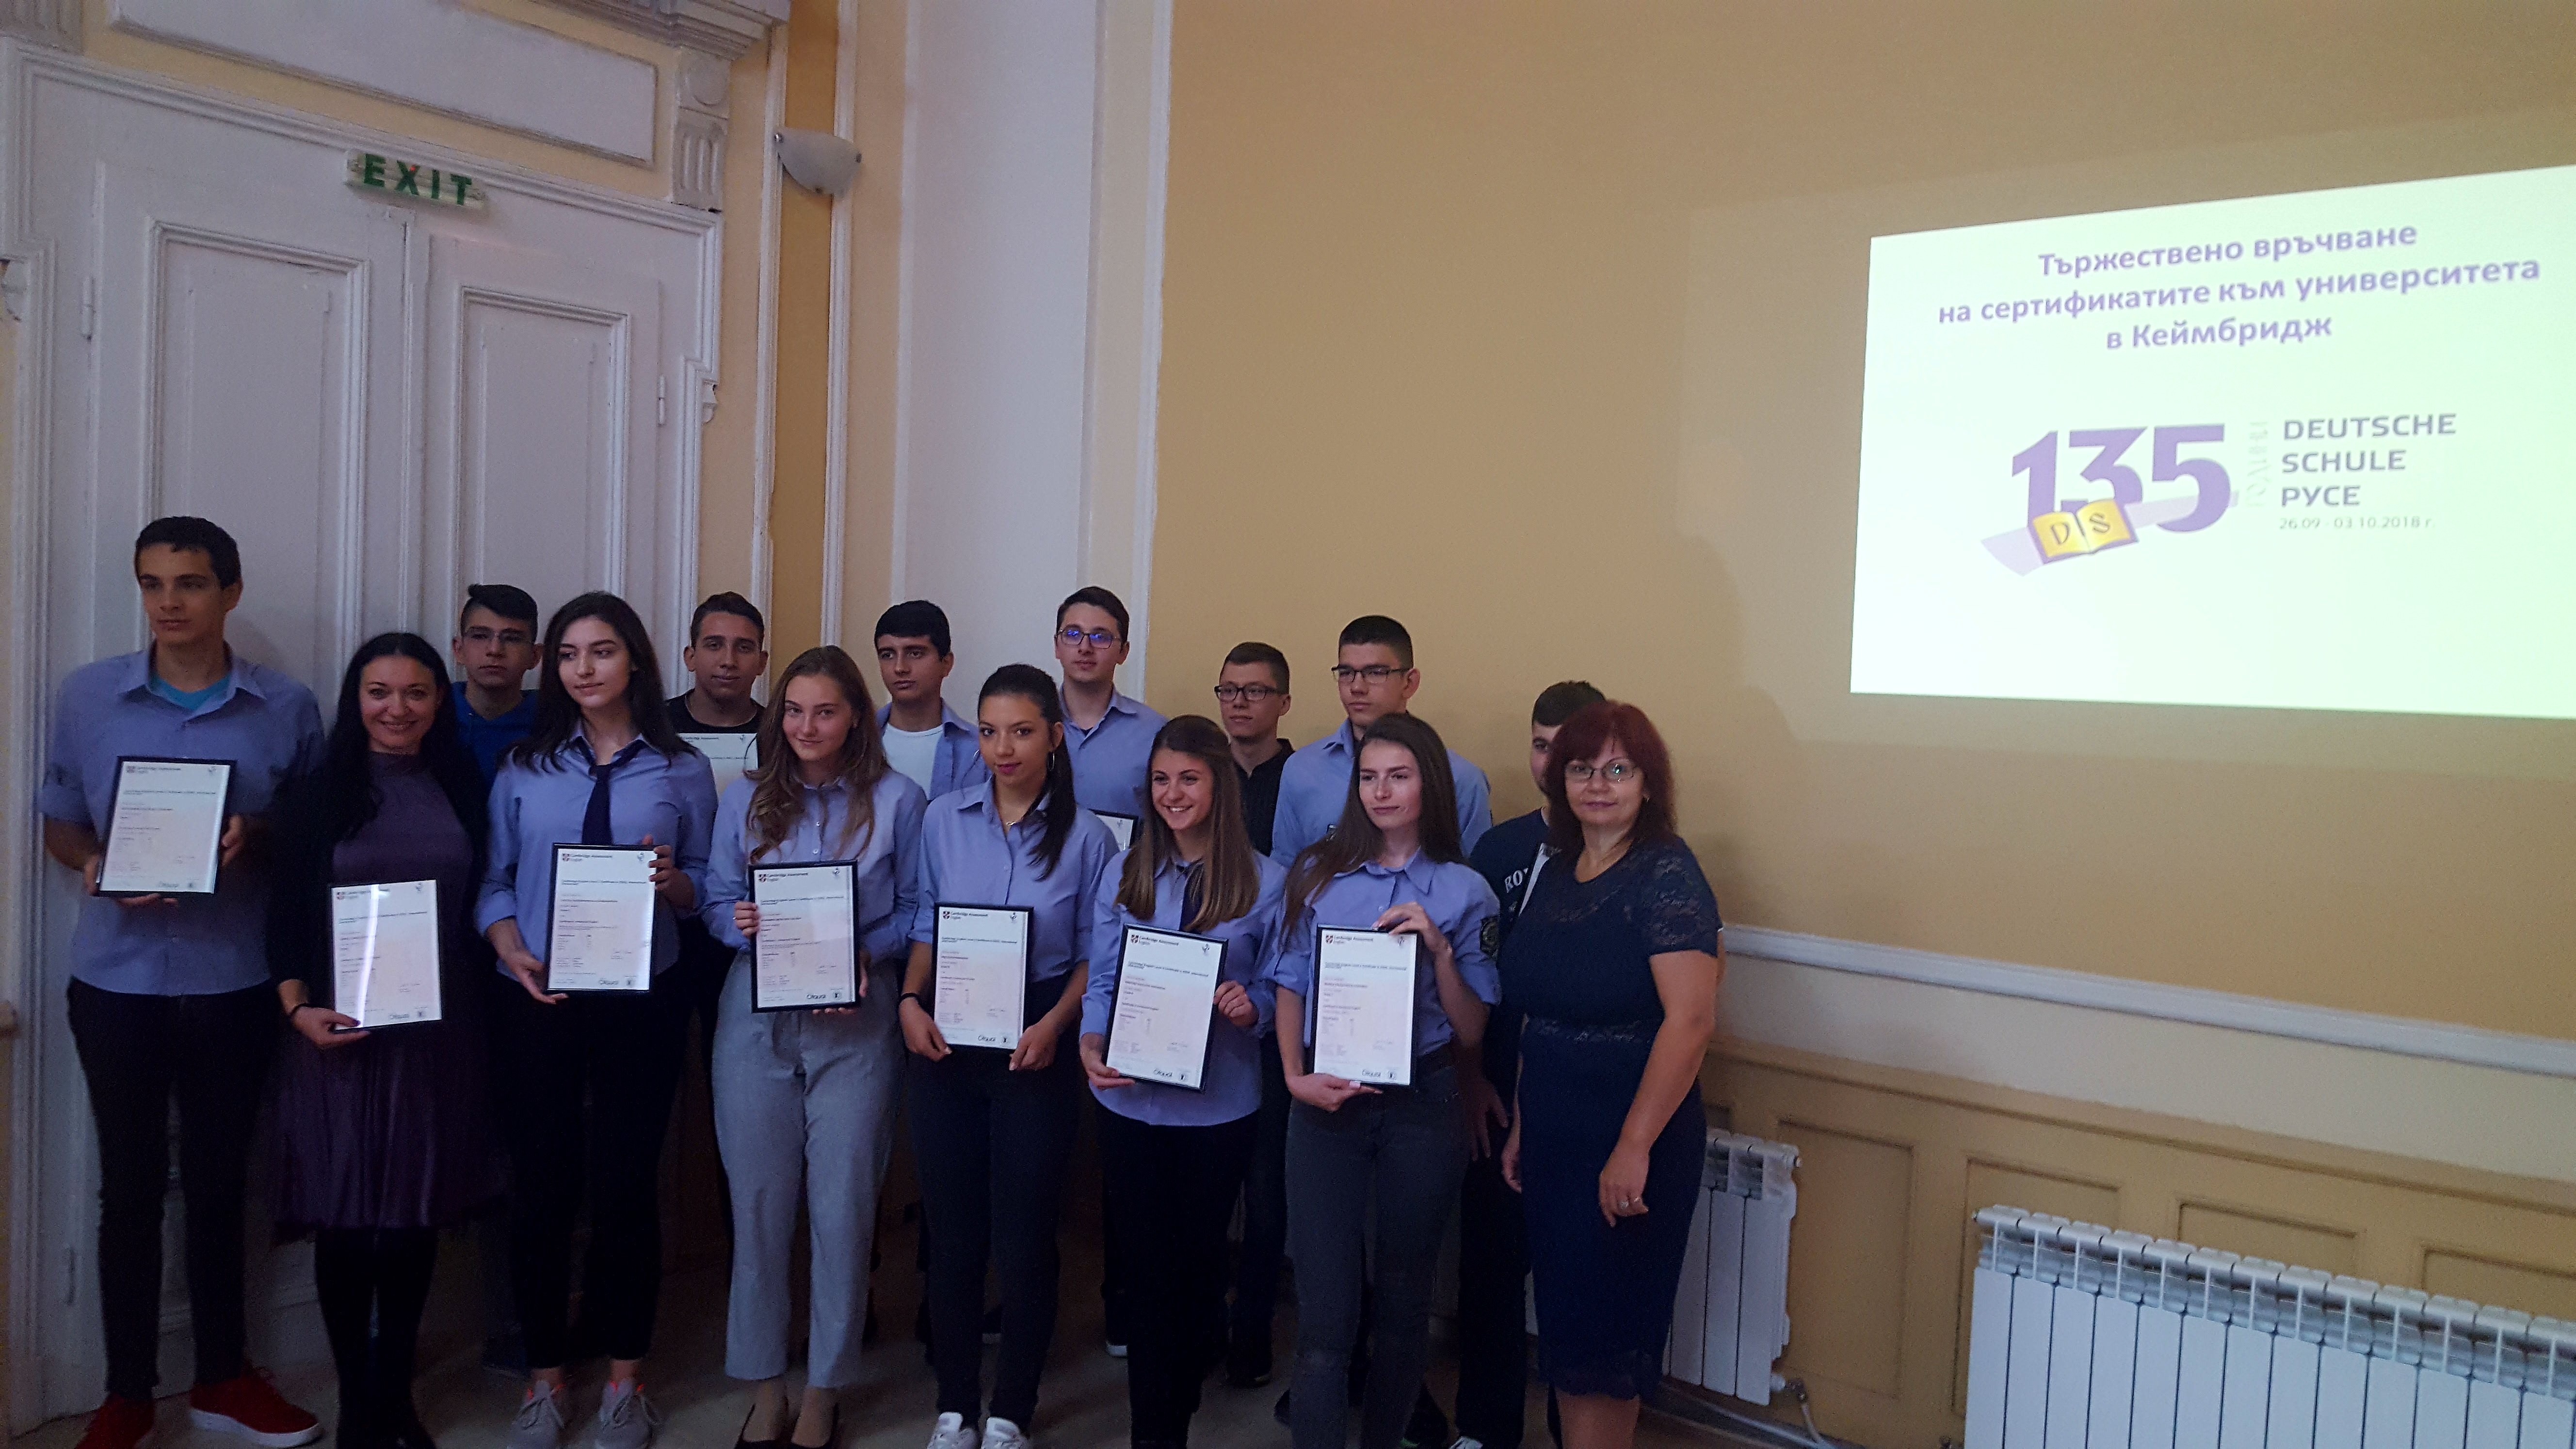 14 ученици от Дойче шуле с престижен сертификат от Кеймбридж